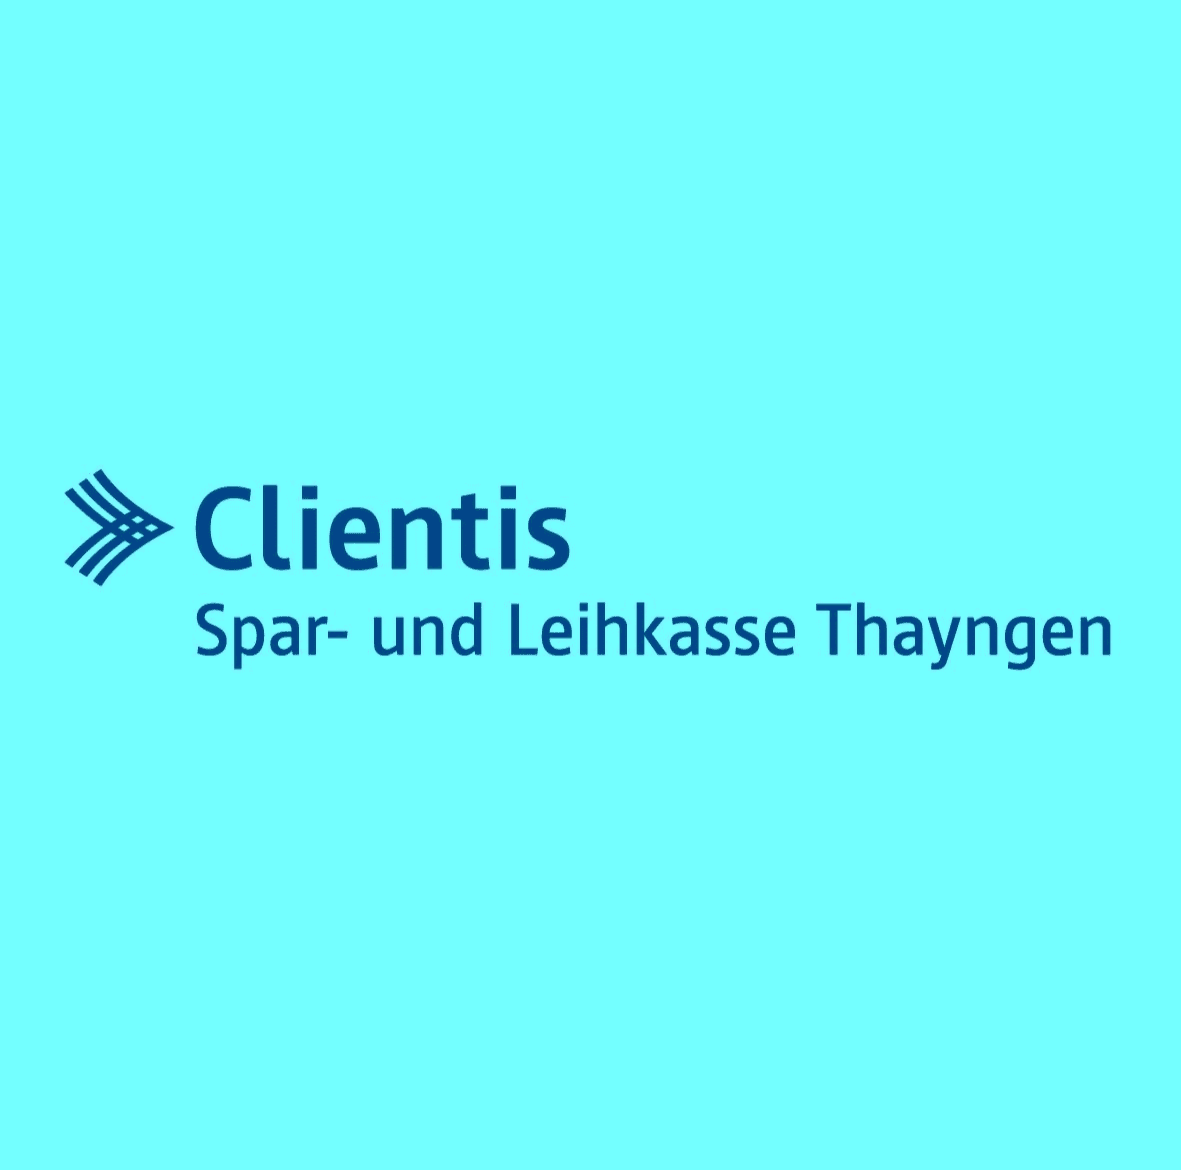 Clientis Spar- und Leihkasse Thayngen